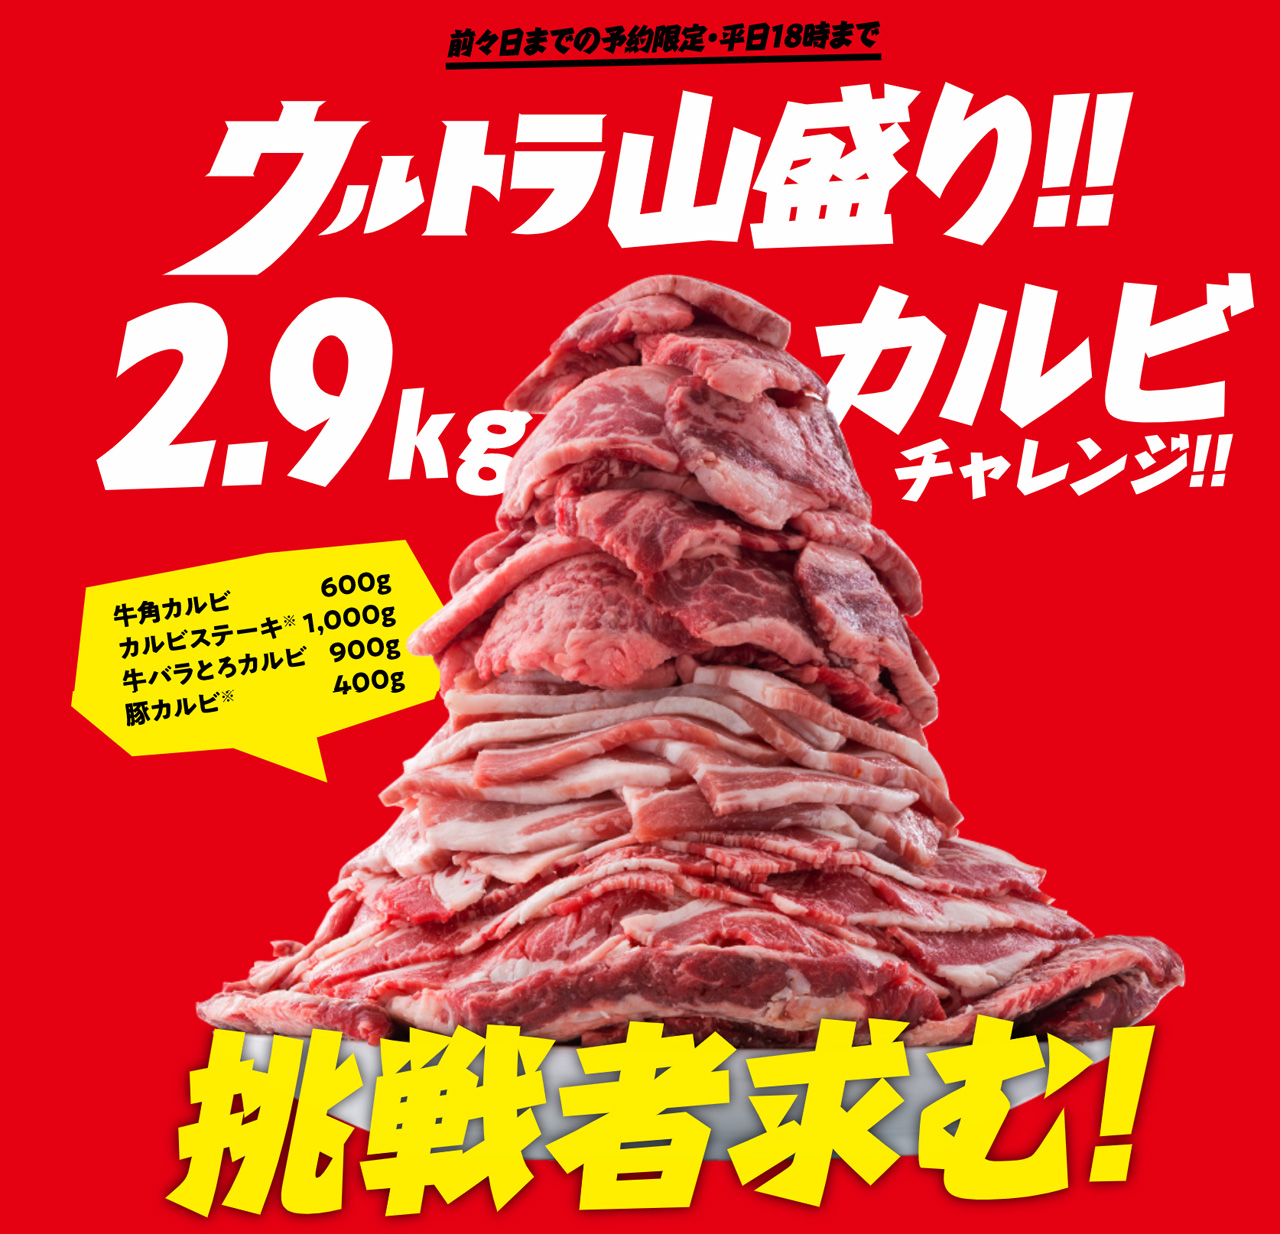 テレビの大食い番組で見るような肉の山！ 「ウルトラ山盛り!! 2.9kgカルビチャレンジ!!」は前々日までの予約が必要